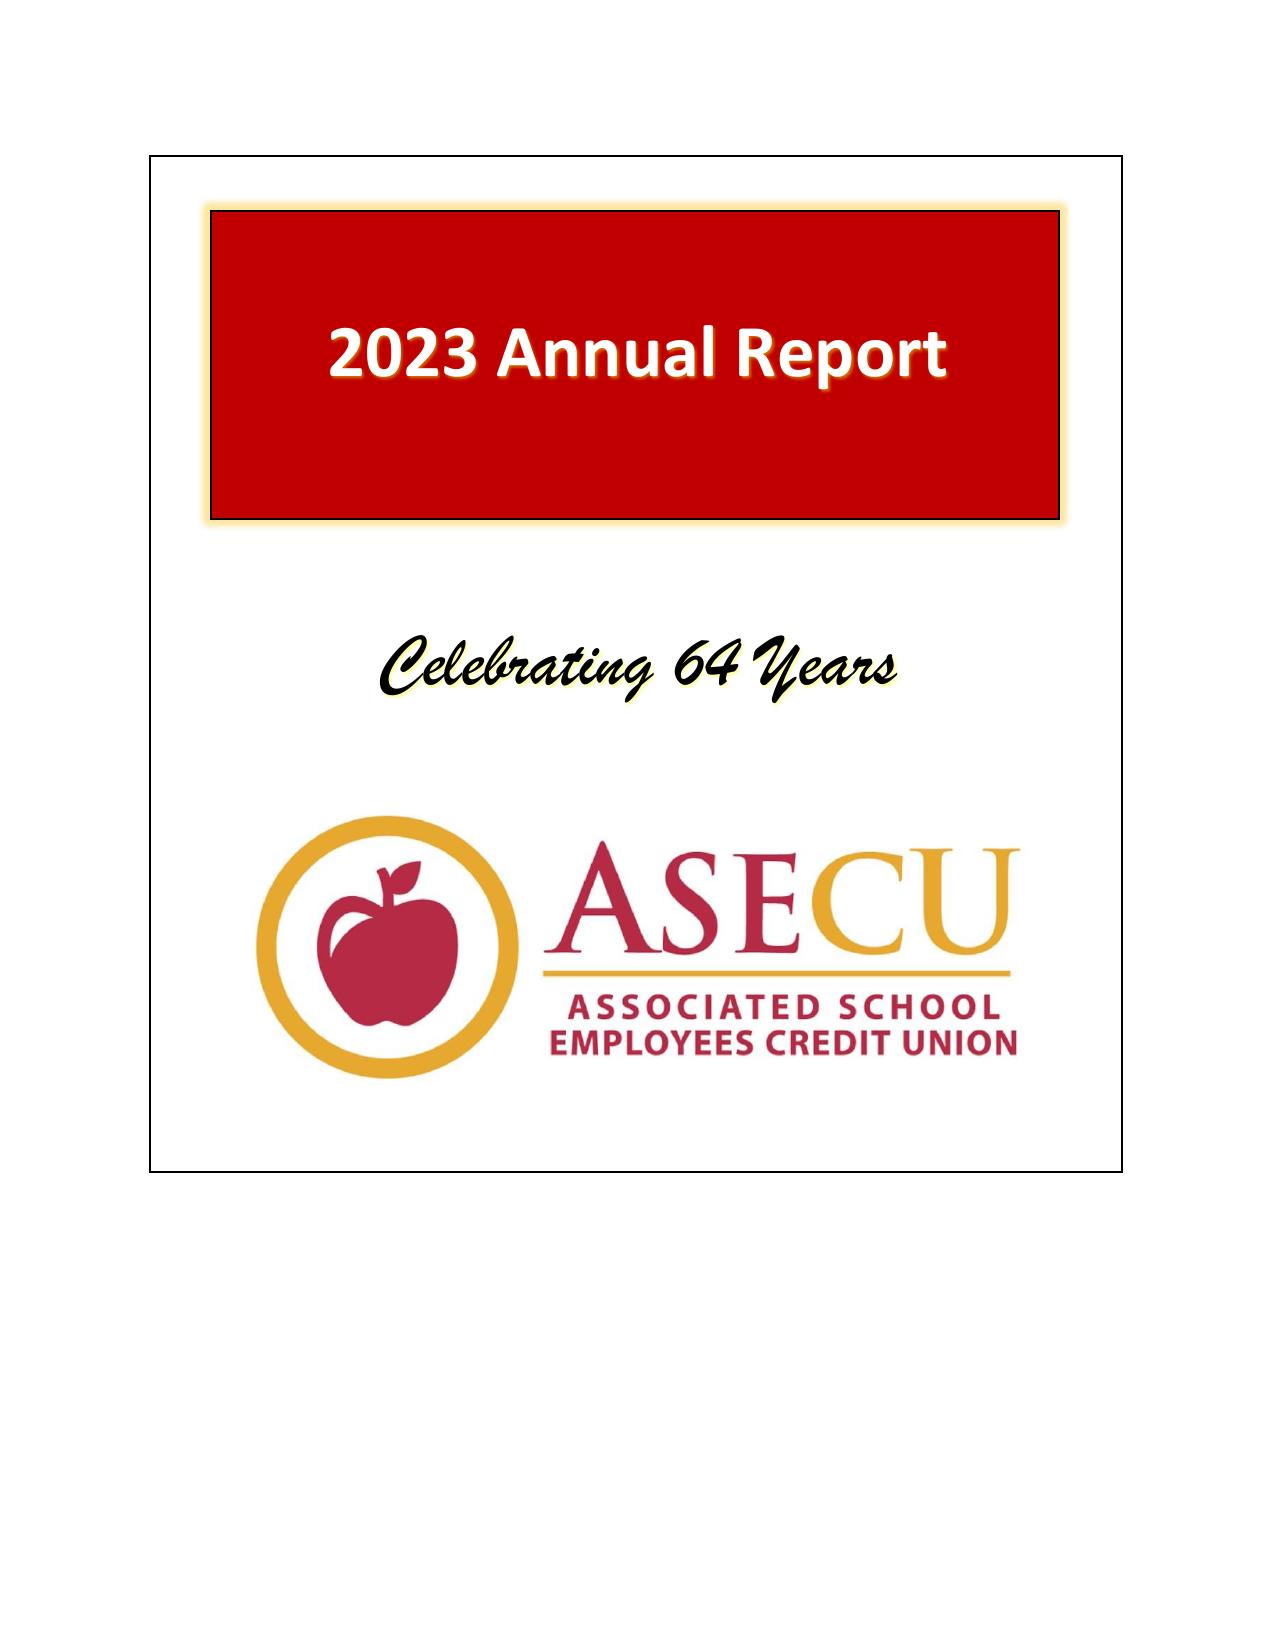 ASECU 2023 Annual Report